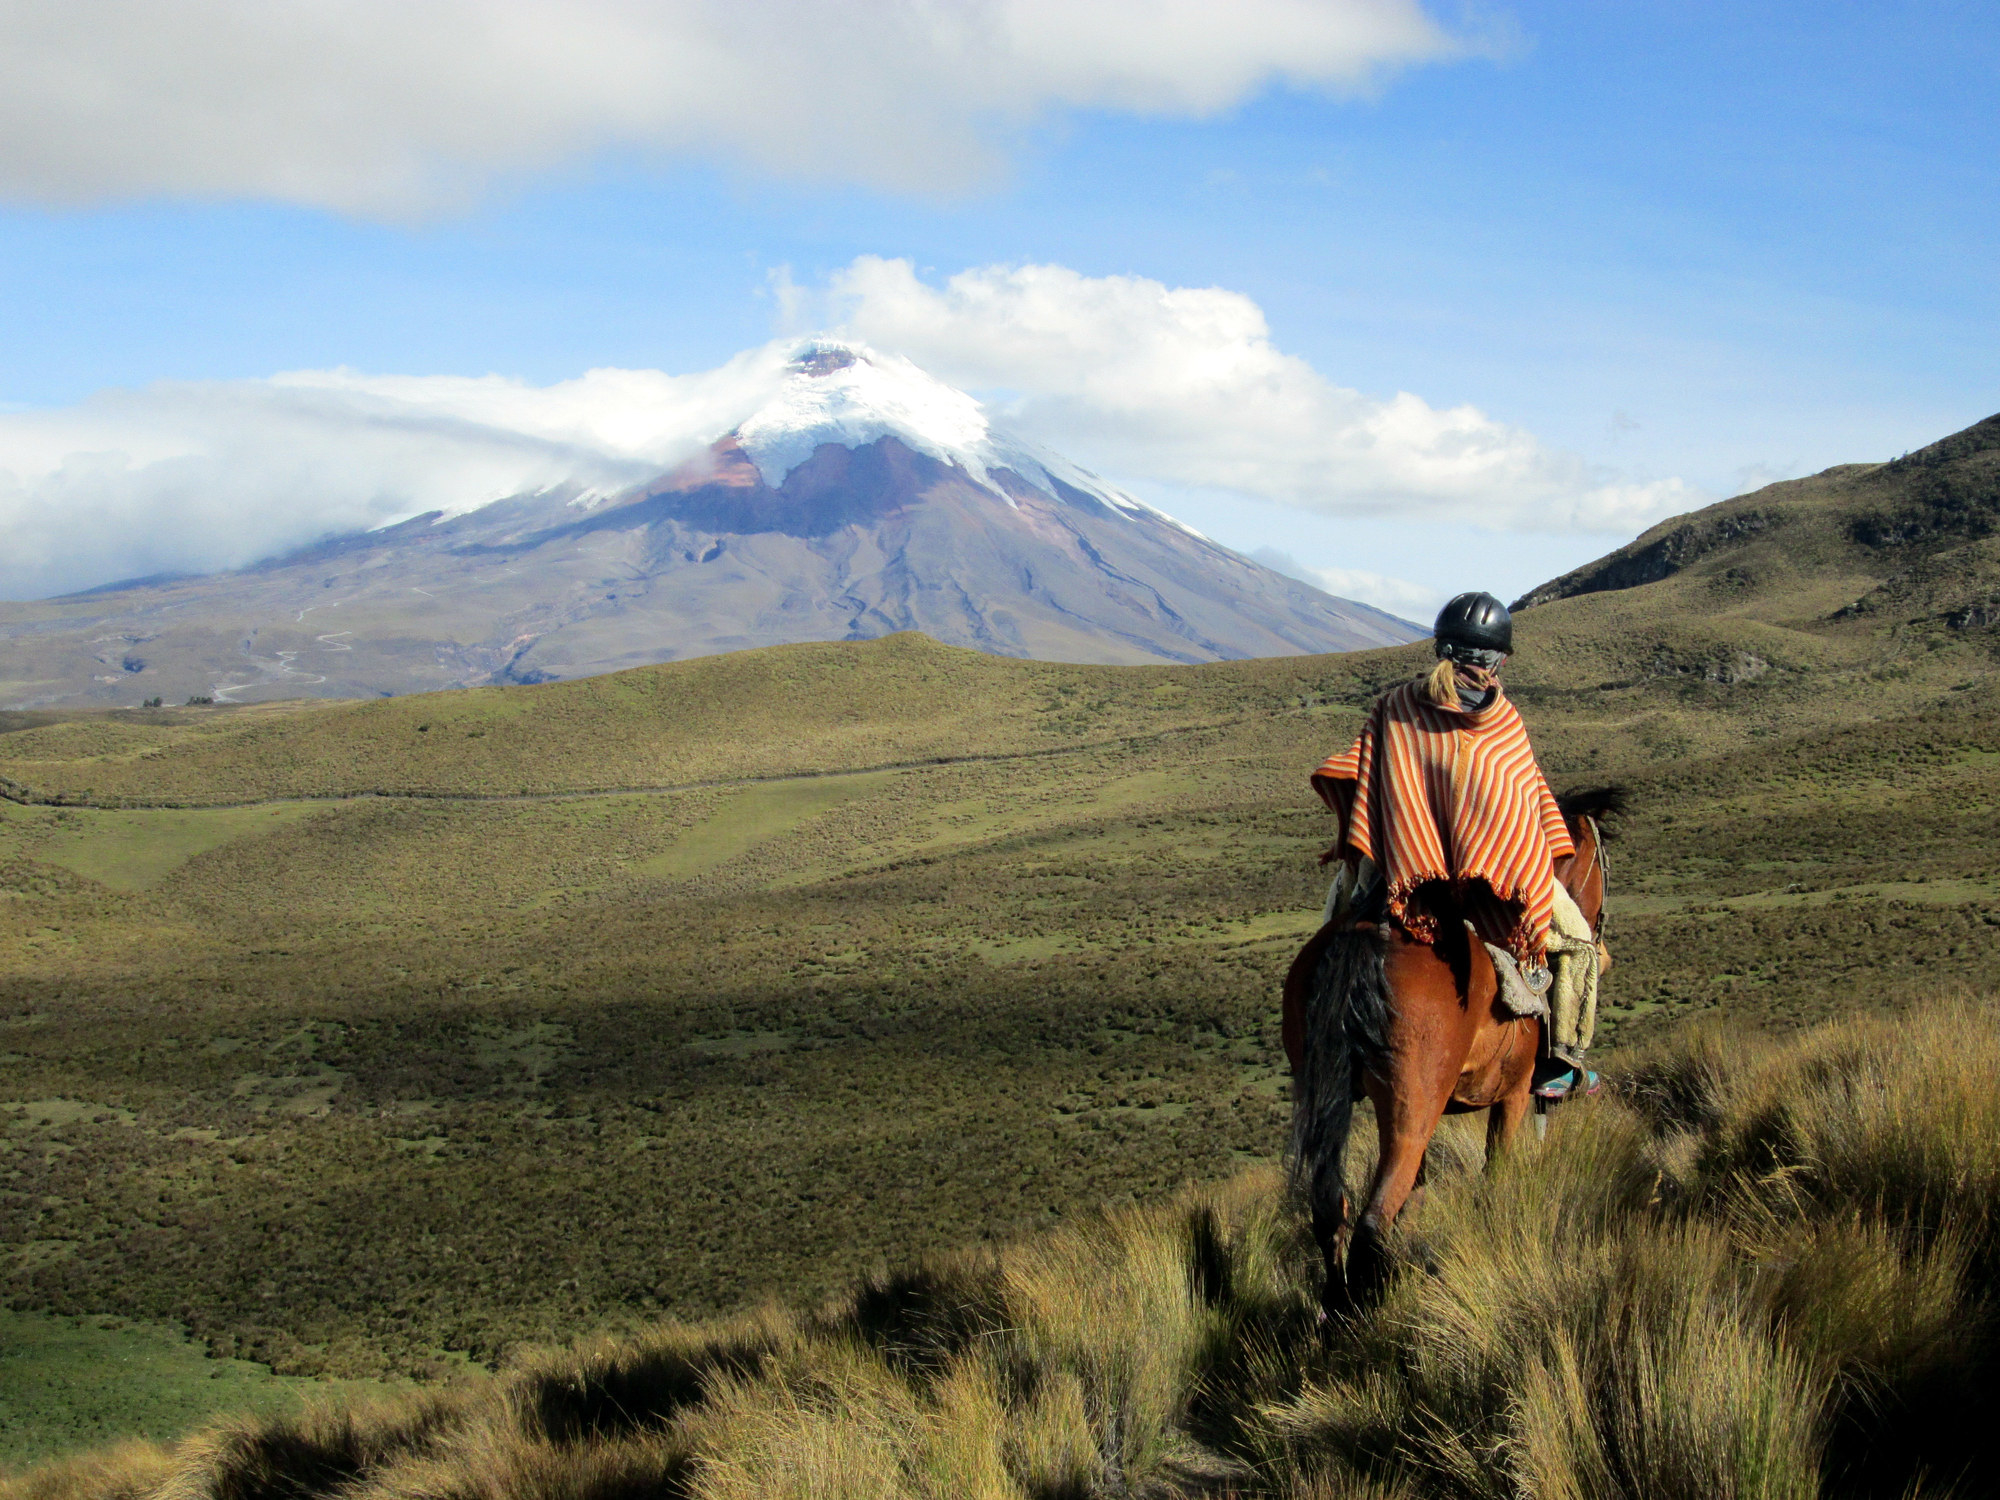 A person riding a horse in an Ecuadorian poncho.